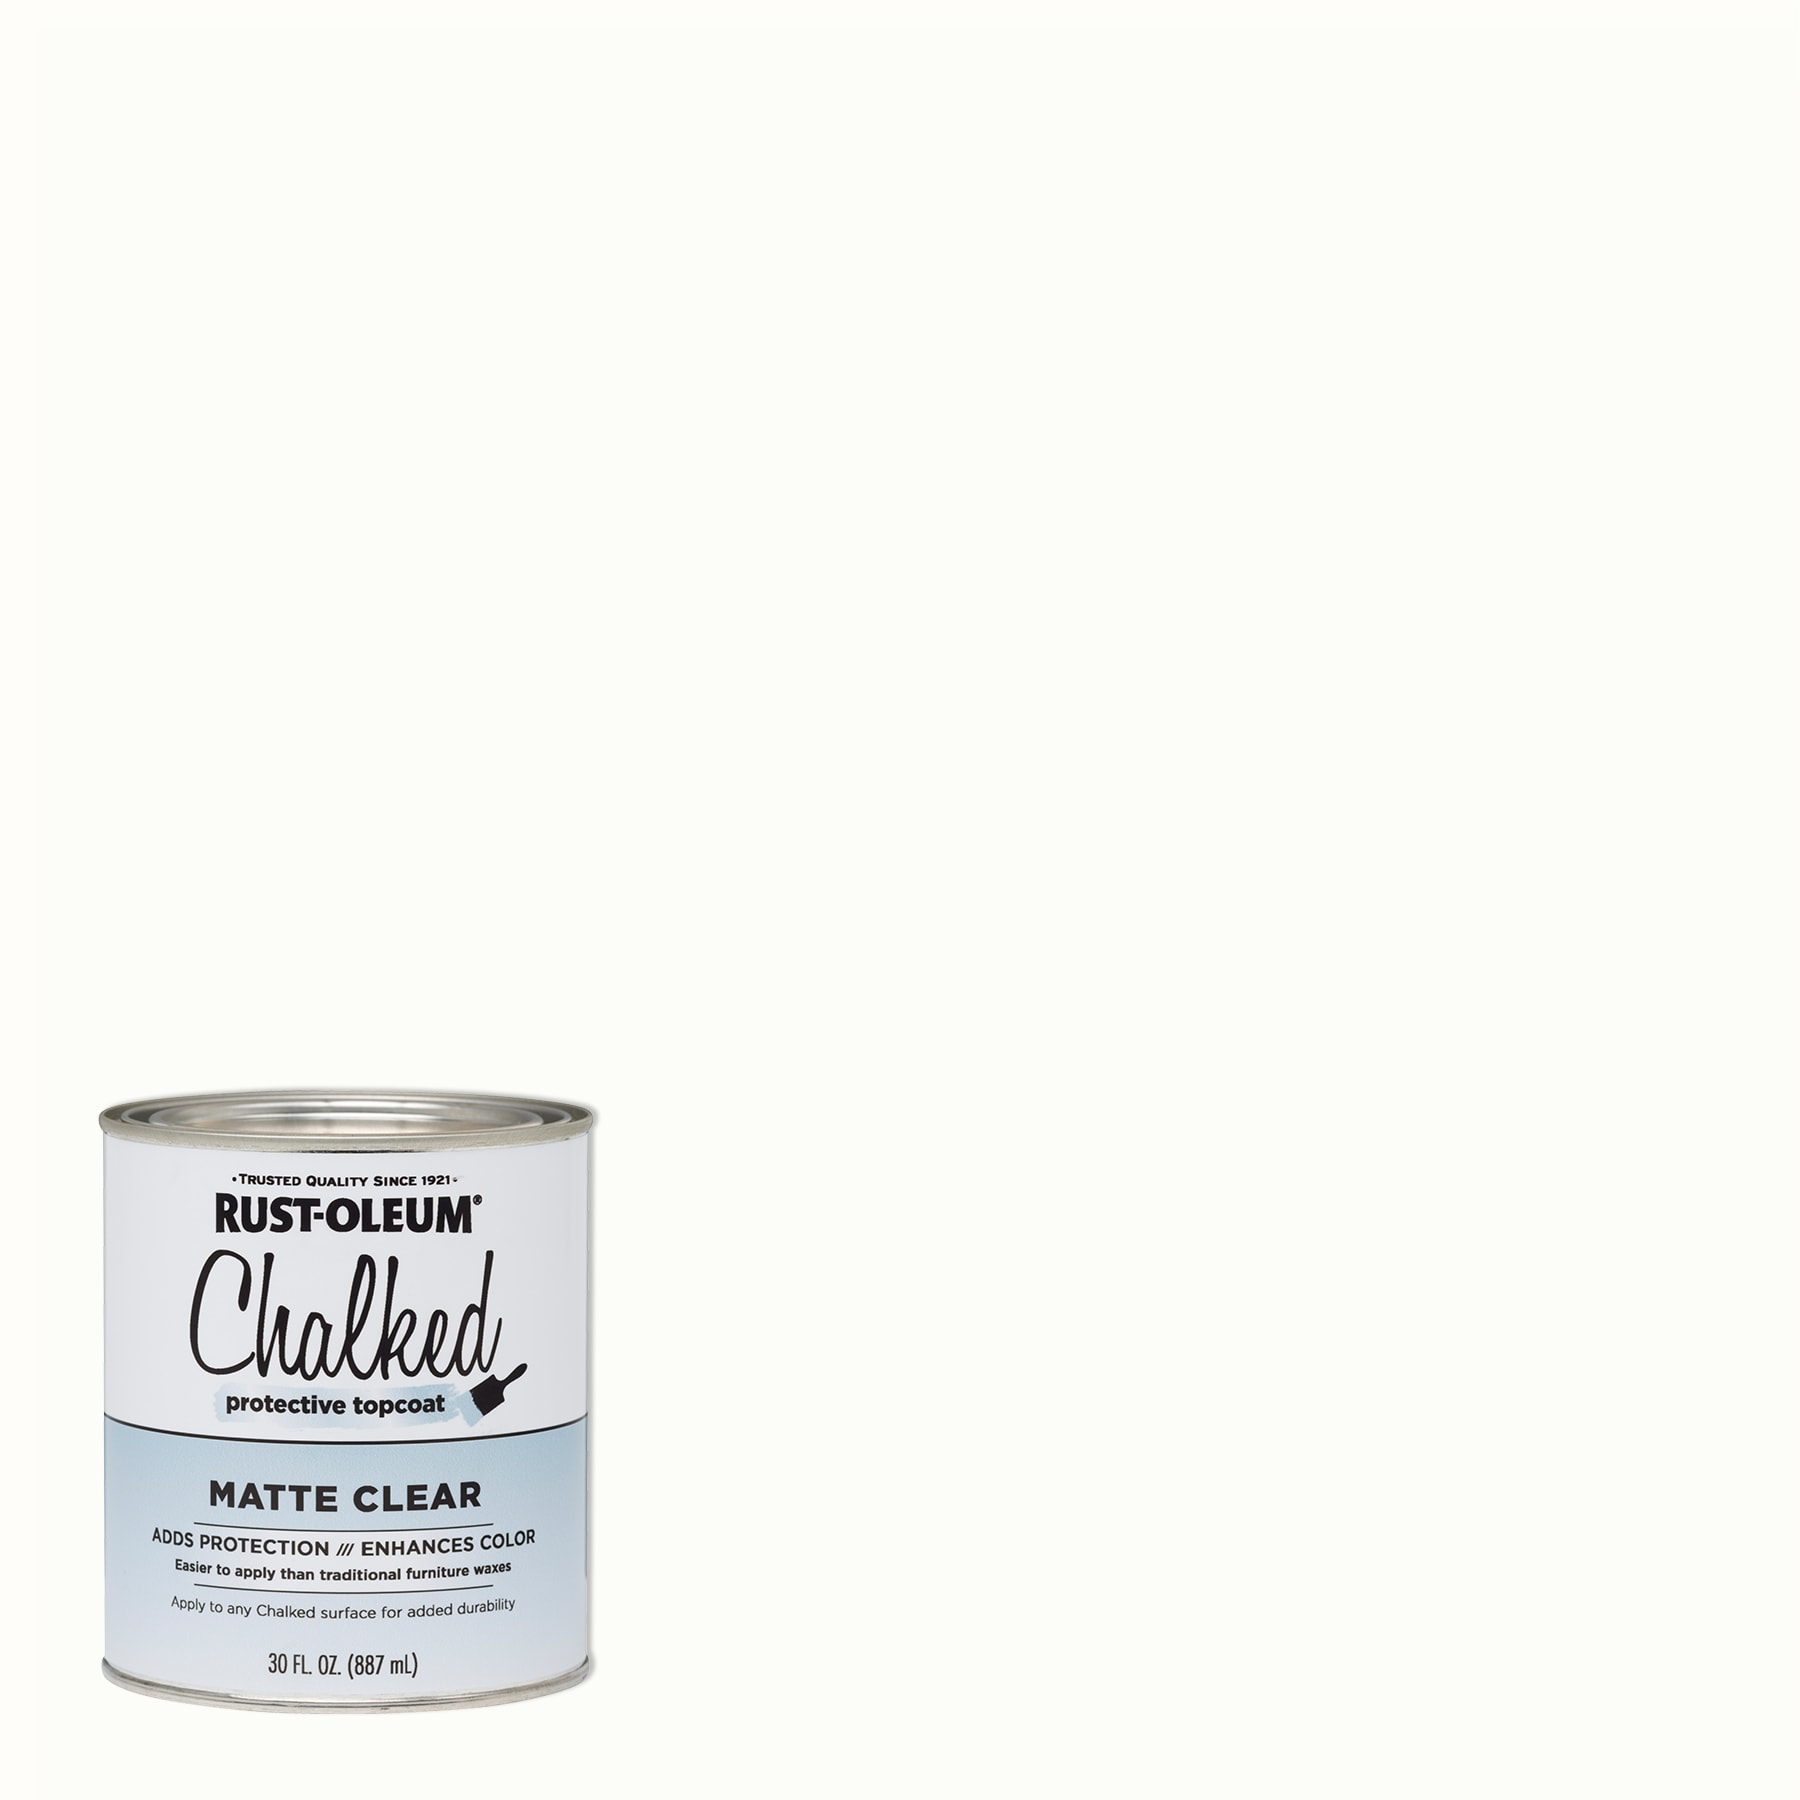 Rust-Oleum Linen White Acrylic Chalky Paint (1-Quart)